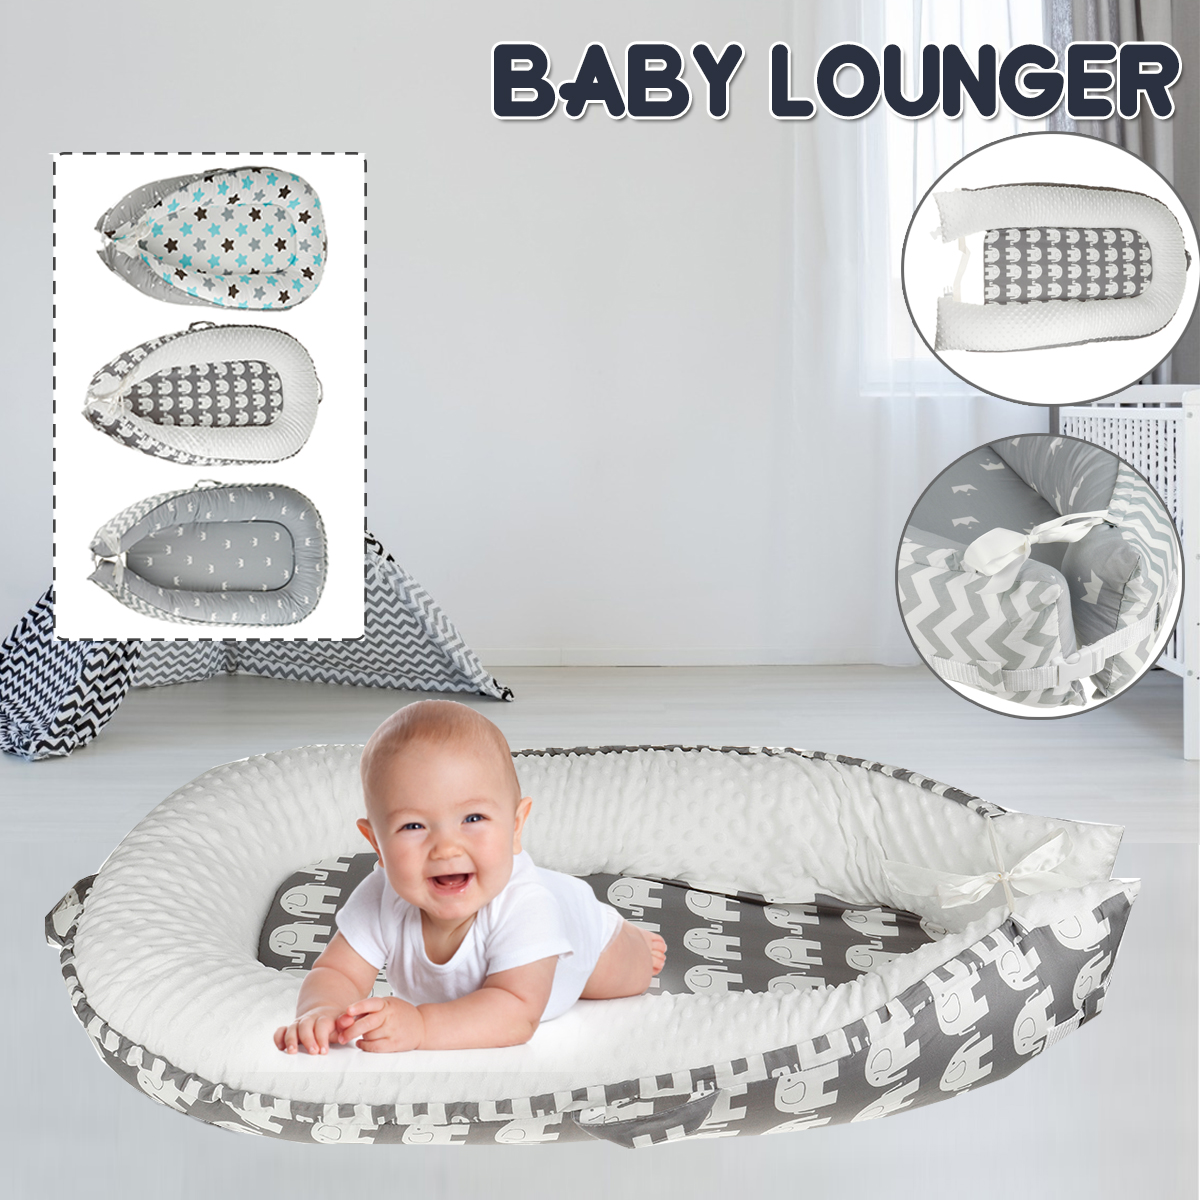 Infant-Soft-Newborn-Baby-Pillow-Cushion-Lounger-Pod-Cot-Bed-Sleeping-Mattre-1974147-1